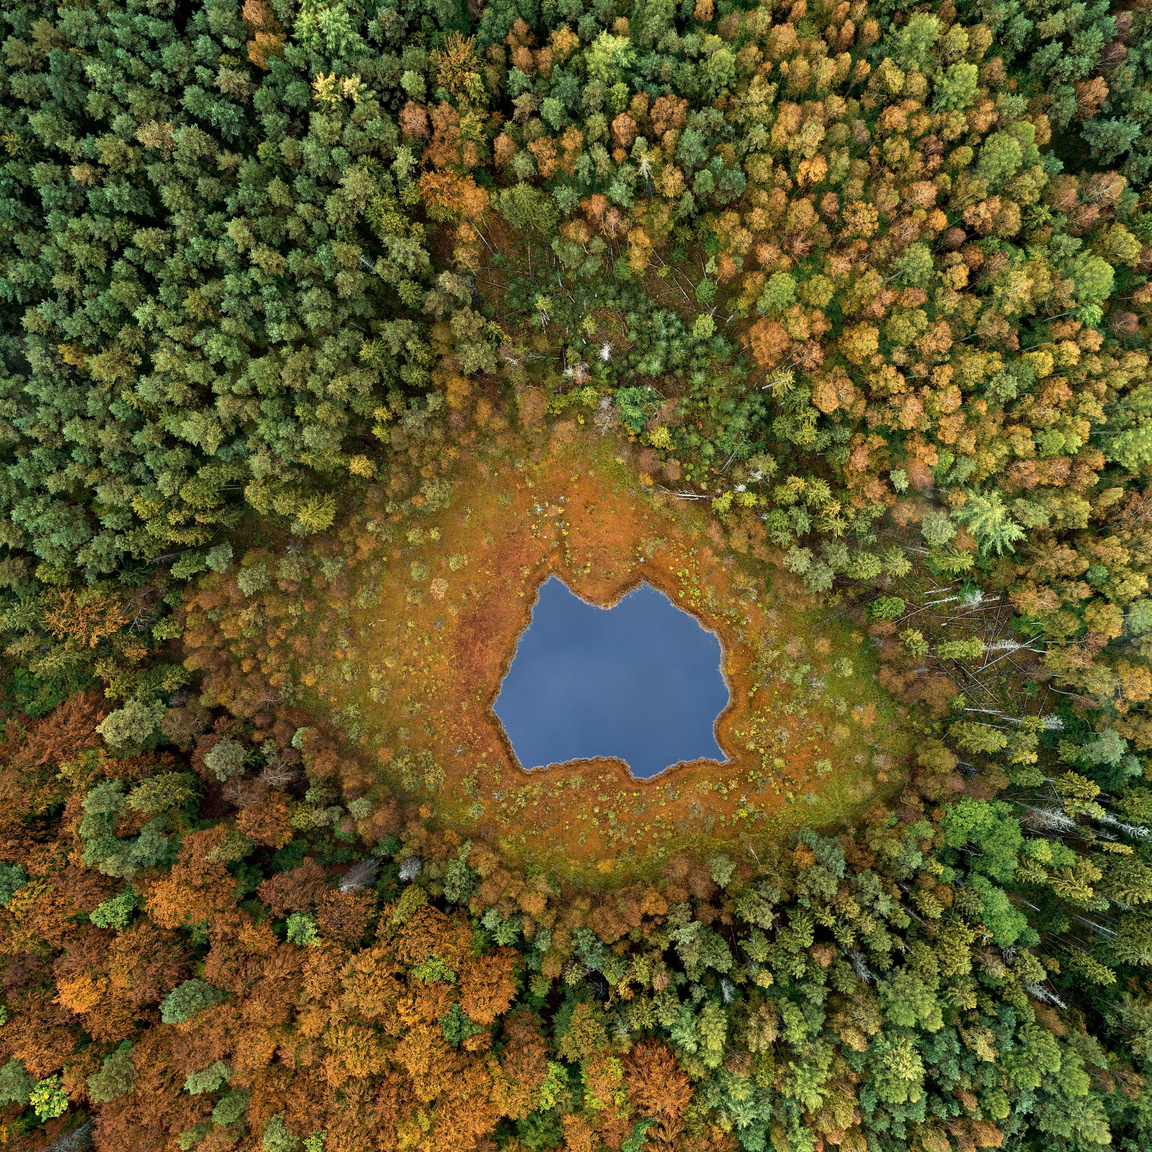  Disztrófikus tó az erdő közepén
                        Az őszi színekben pompázó erdő közepén a savas tó a mocsári növényzet burjánzása miatt egyre jobban beszűkül, és mint az erdő szeme tekint a környezetére.
                        Kelet Pomeránia, Lengyelország, Brodnica erdő, 2019